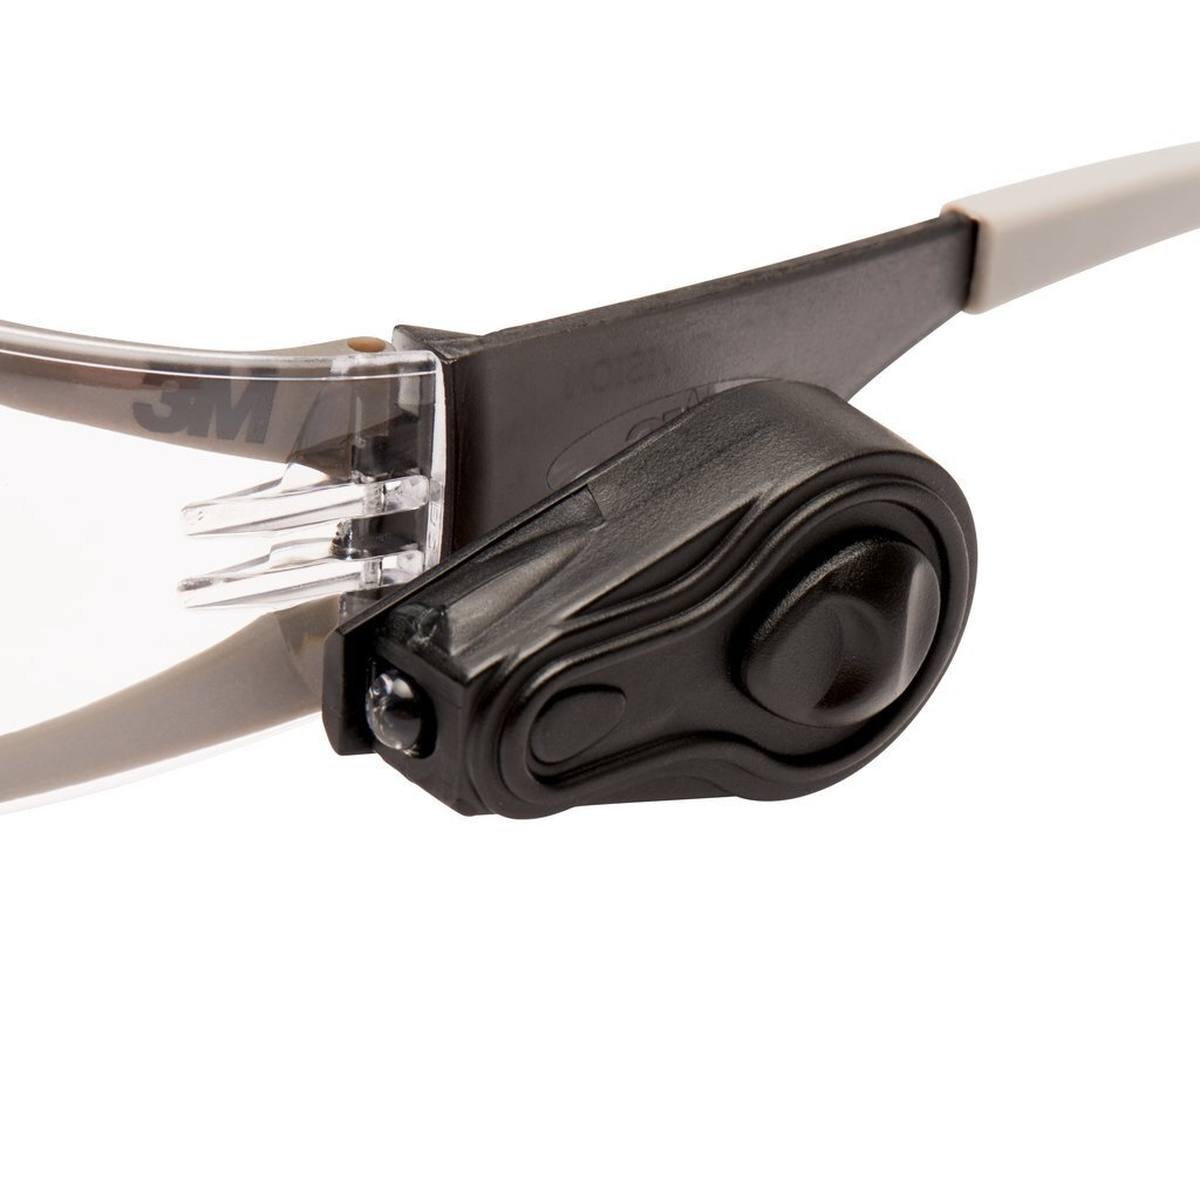 occhiali di sicurezza 3M LED Light Vision AS/AF/UV, PC, trasparenti, con LED regolabile, incluso sacchetto in microfibra LEDLV